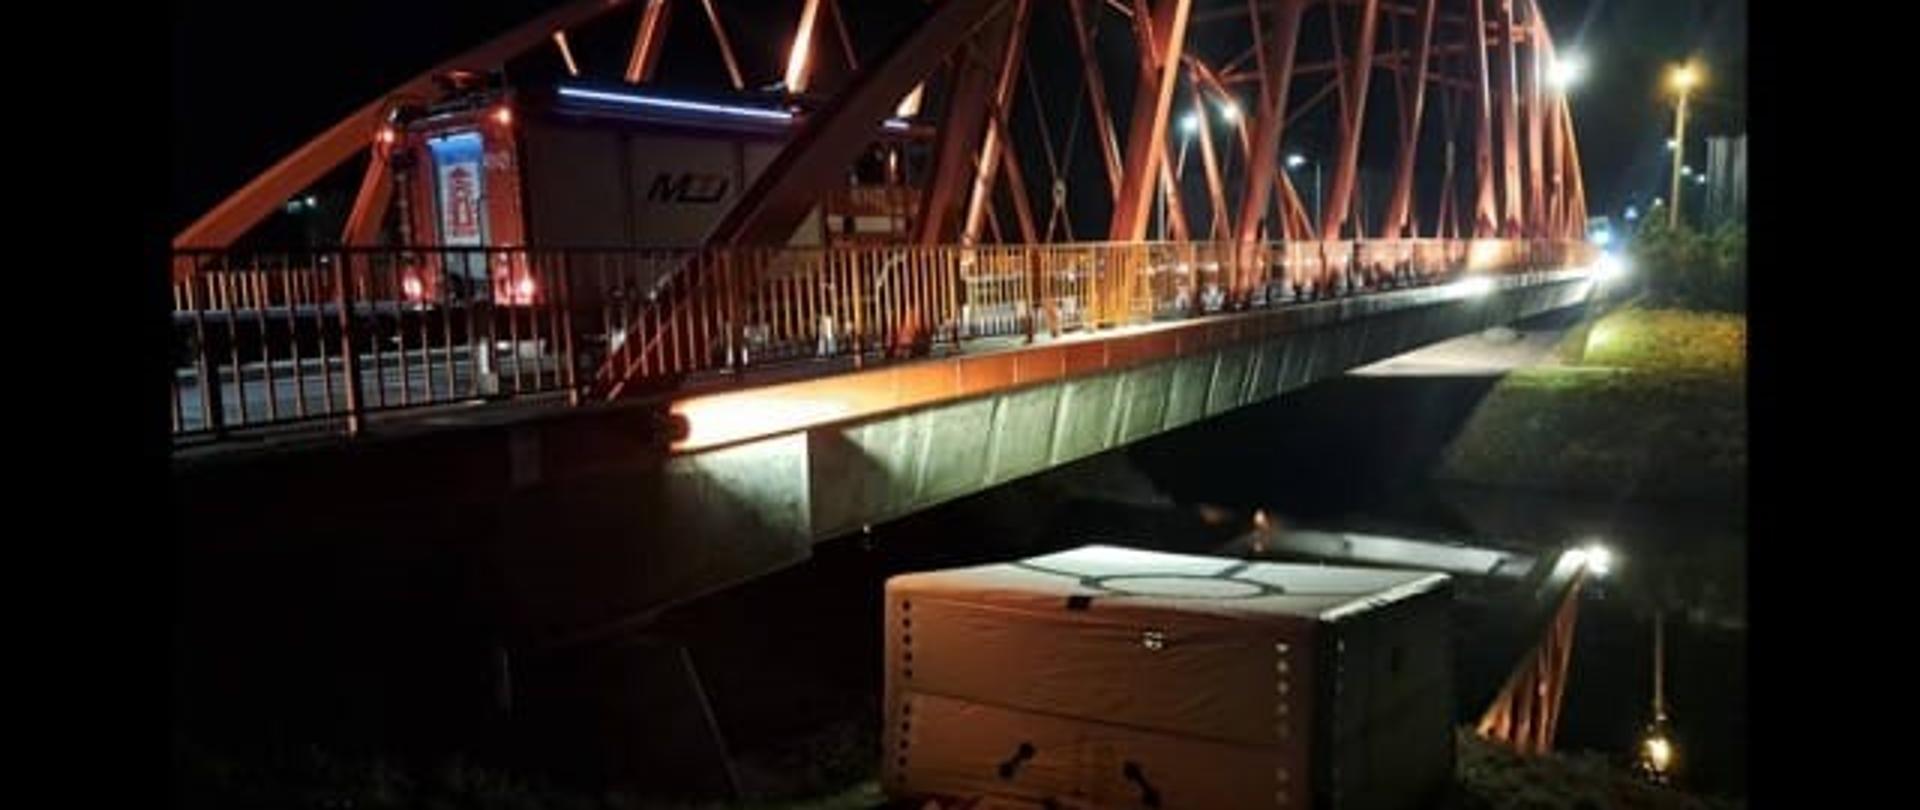 Zdjęcie zrobione nocą. Na zdjęciu oświetlony most z czerwonymi przęsłami. Na moście samochód strażacki. Pod mostem rozstawiony biały skokochron.